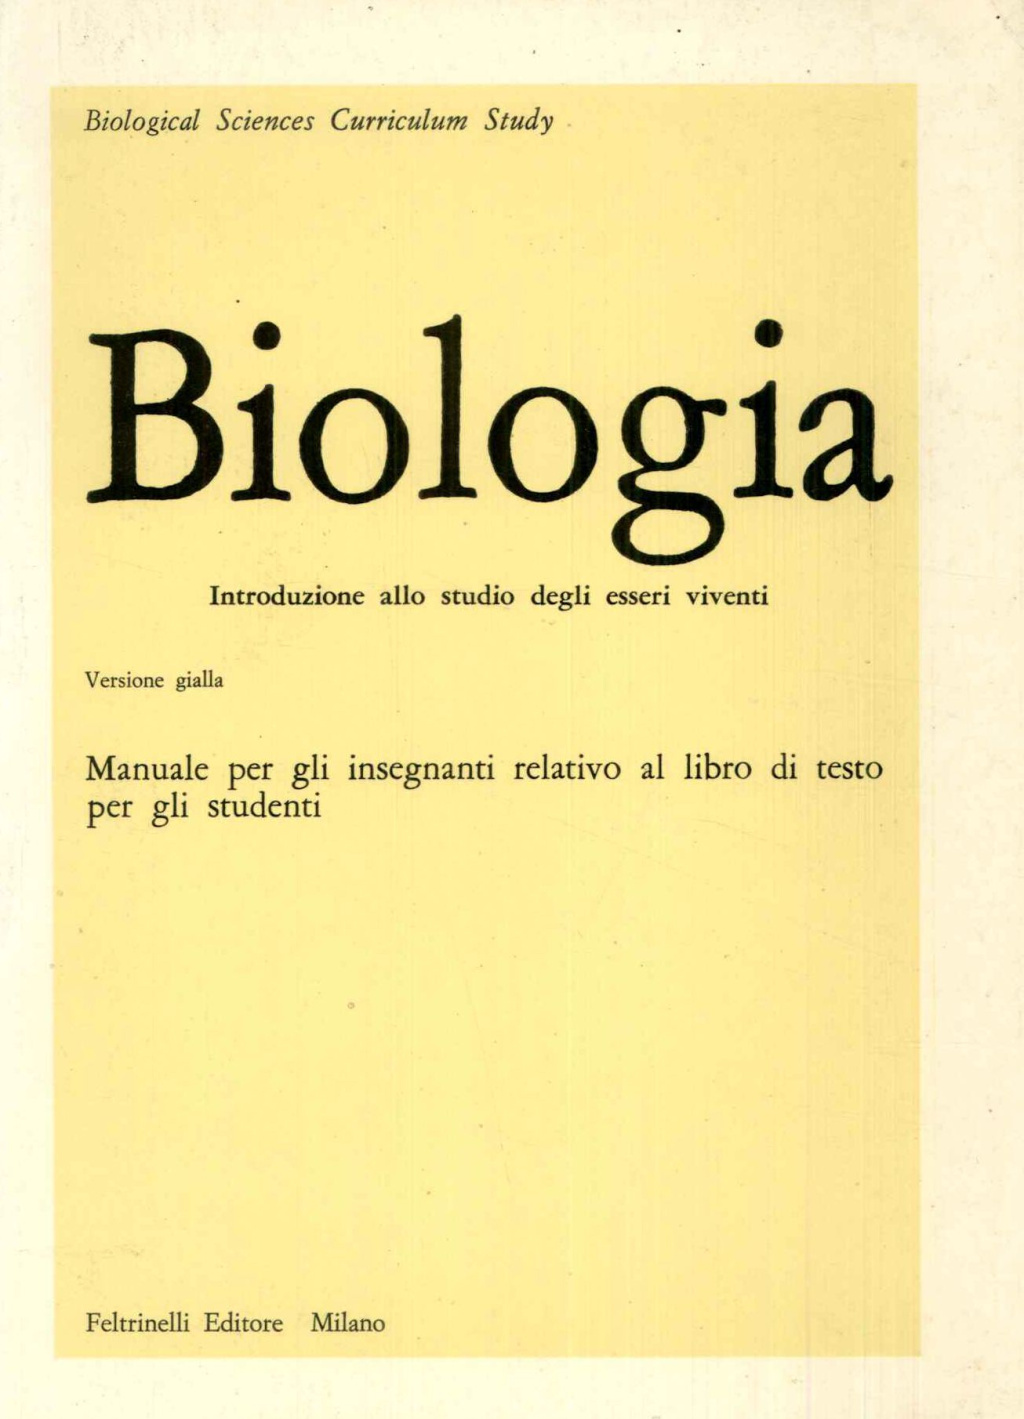 Biologia. Introduzione allo studio degli esseri viventi. Manuale per gli insegnanti relativo al libro di testo per gli studenti. 